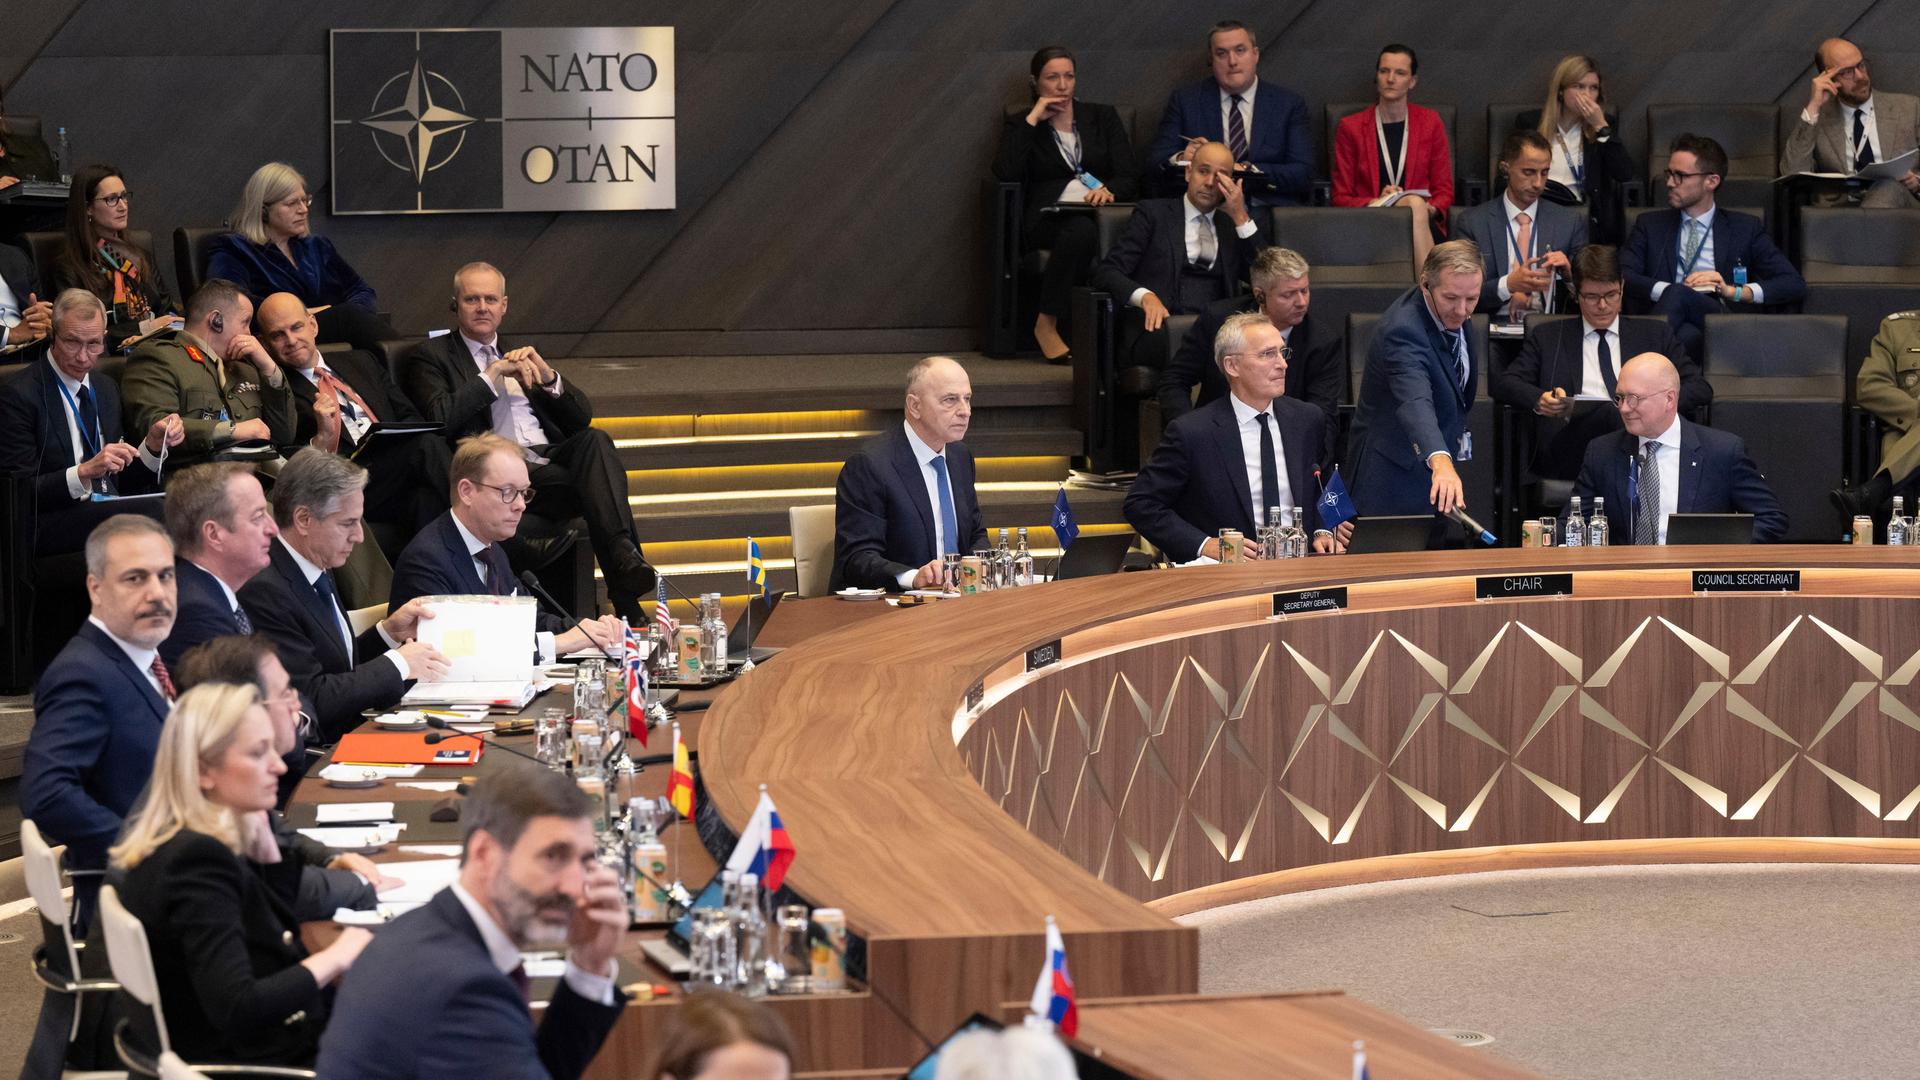 NATO-Generalsekretär Stoltenberg sitzt gemeinsam mit anderem Personen im Sitzungssaal der NATO in Brüssel.